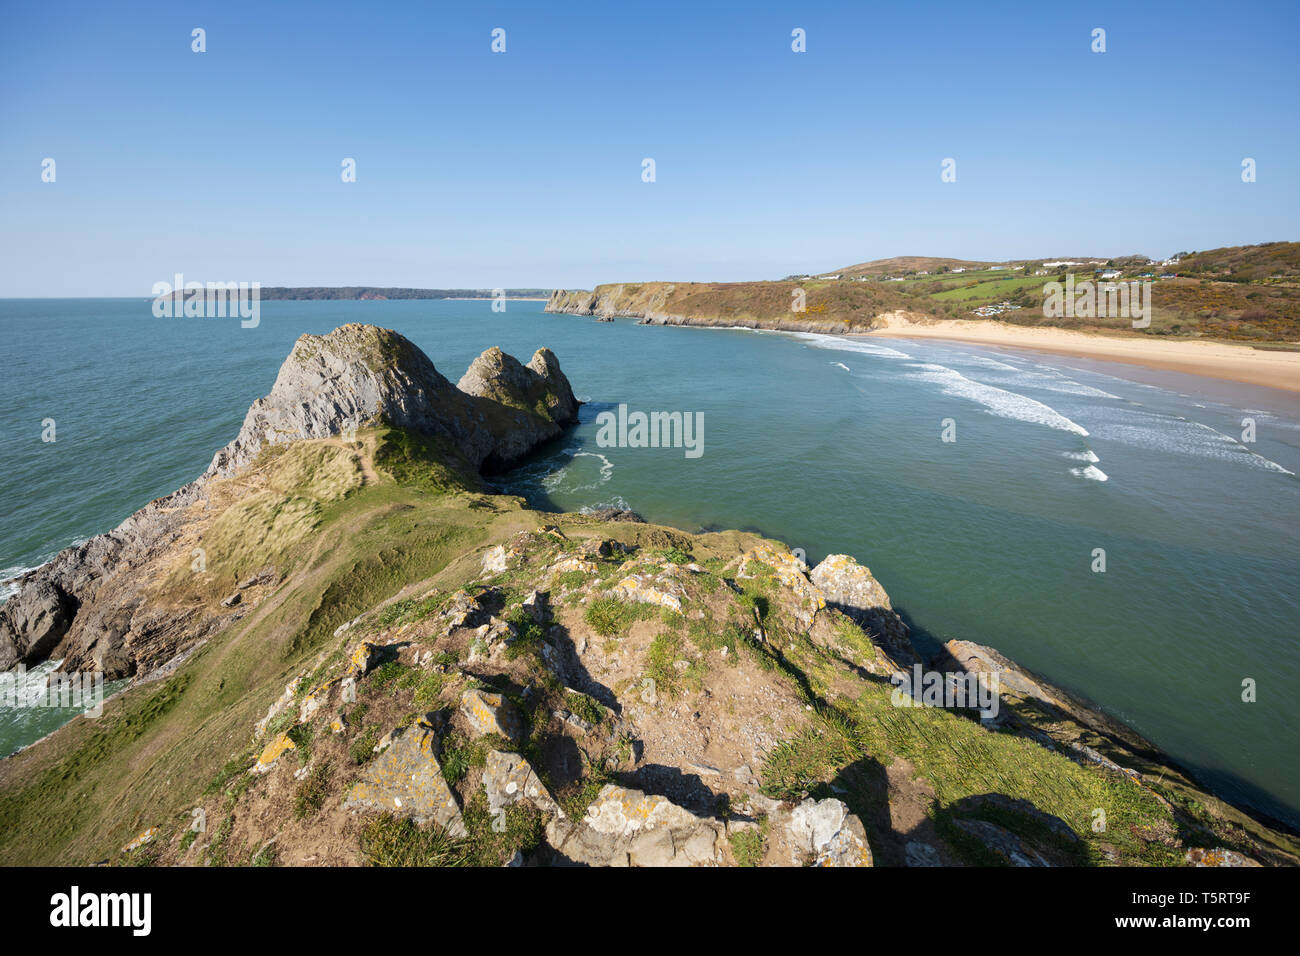 Trois falaises Bay avec à la côte ouest, à marée haute, la péninsule de Gower, Swansea, West Glamorgan, Pays de Galles, Royaume-Uni, Europe Banque D'Images